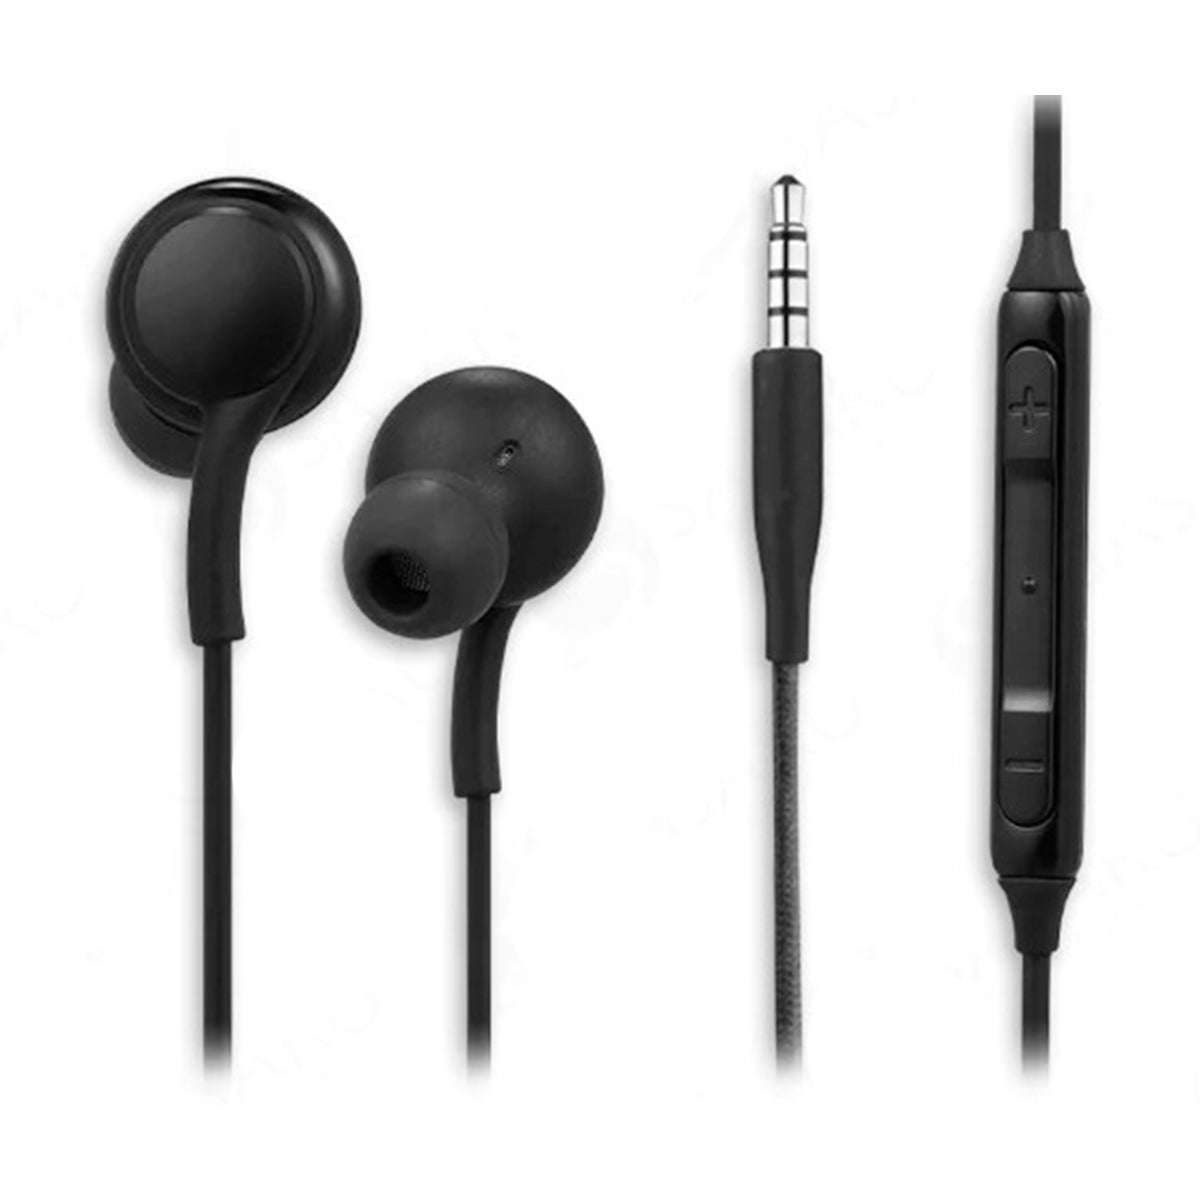 Audífonos Tuned de Original para S8/S9